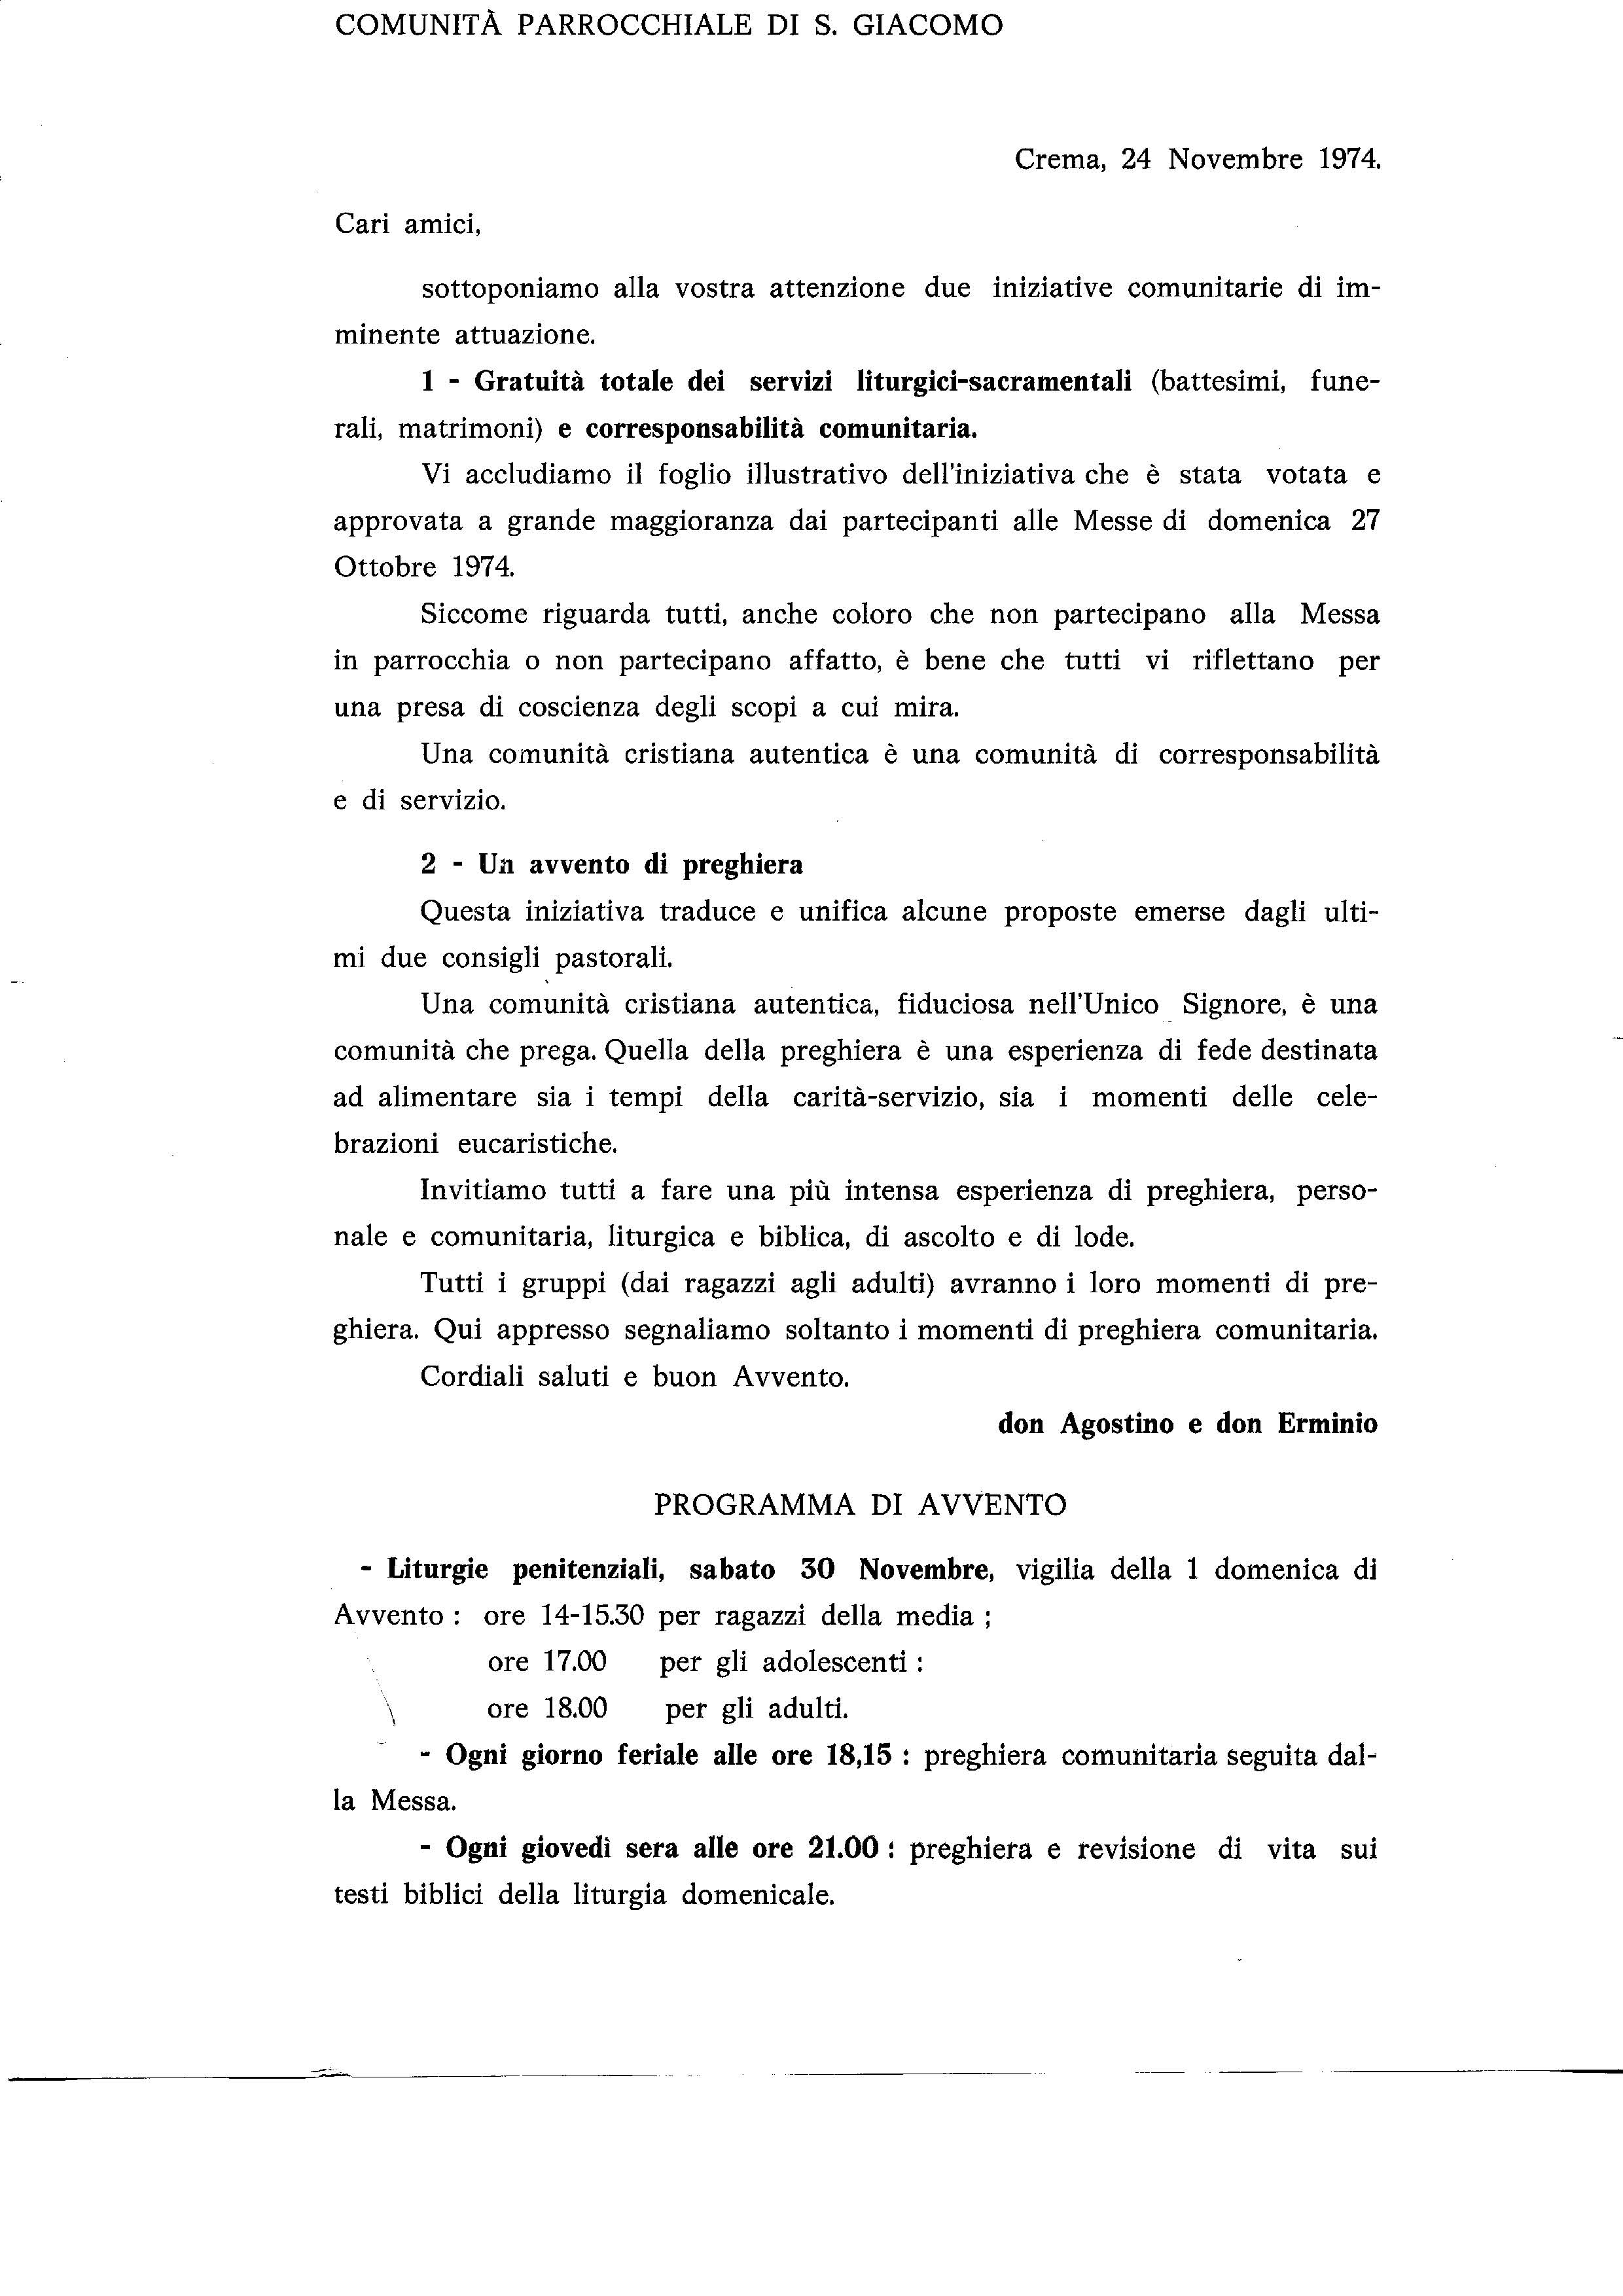 lettera_ai_parrocchiani001.pdf